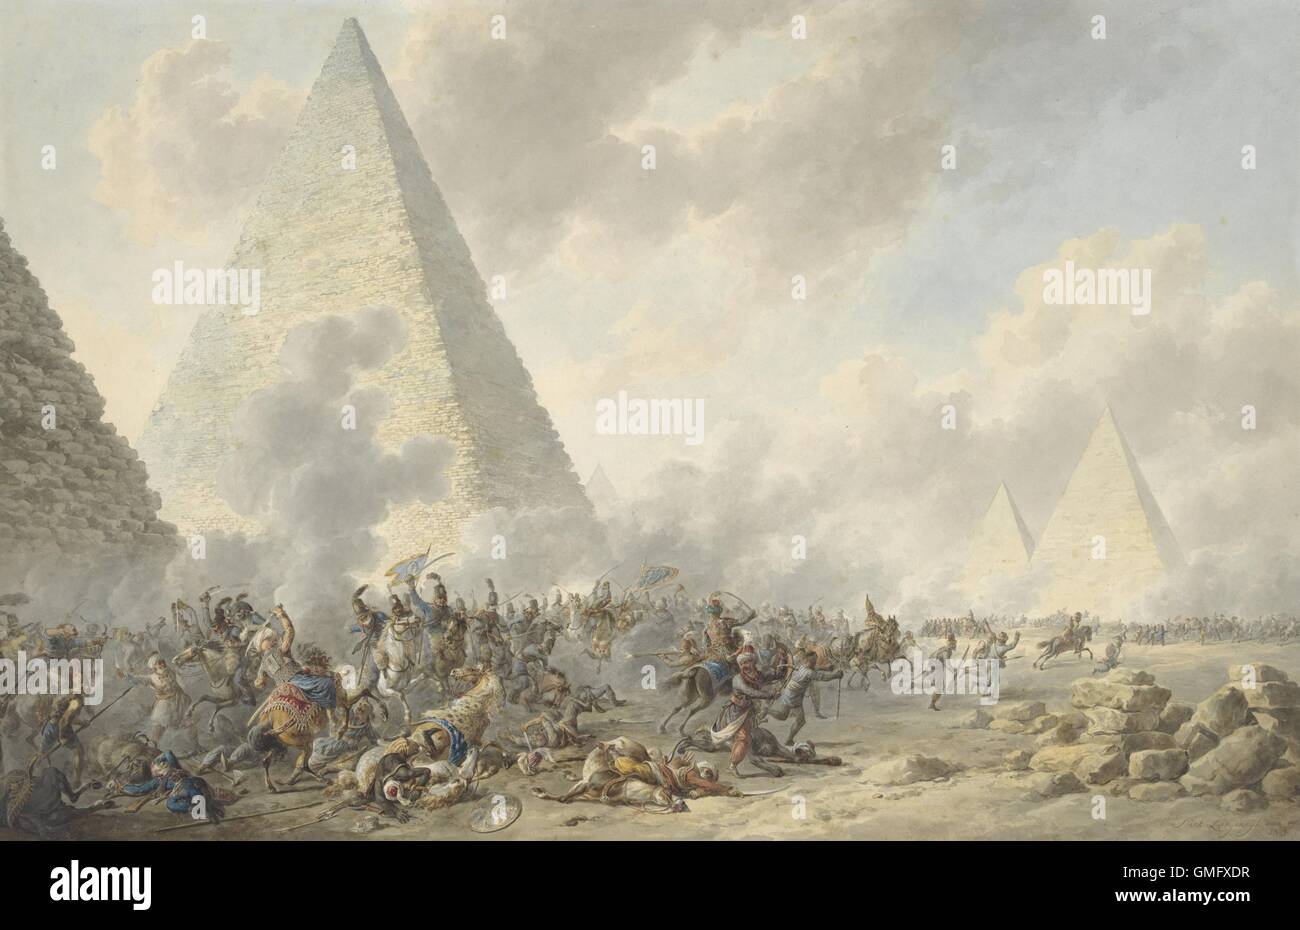 Schlacht bei den Pyramiden, Dirk Lagendijk, 1803, niederländische Aquarellmalerei. Im Jahr 1798 besiegte die französischen Armee Napoleons die ägyptischen Mamelucken (BSLOC 2016 2 212) Stockfoto